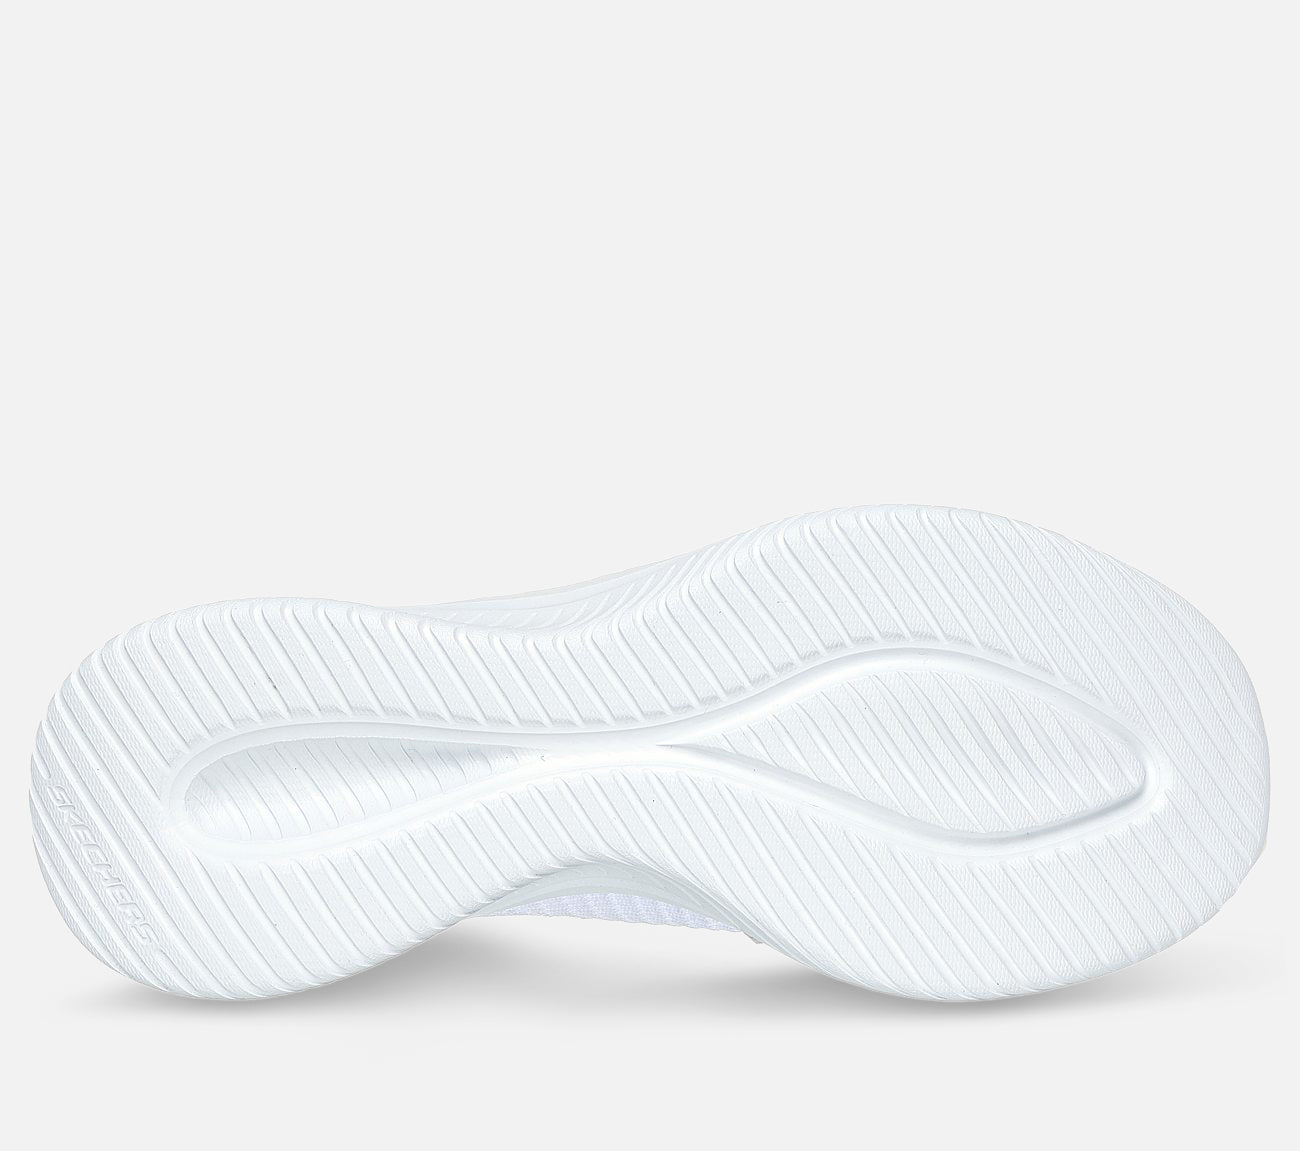 Slip-ins: Ultra Flex 3.0 - Cozy Streak Shoe Skechers